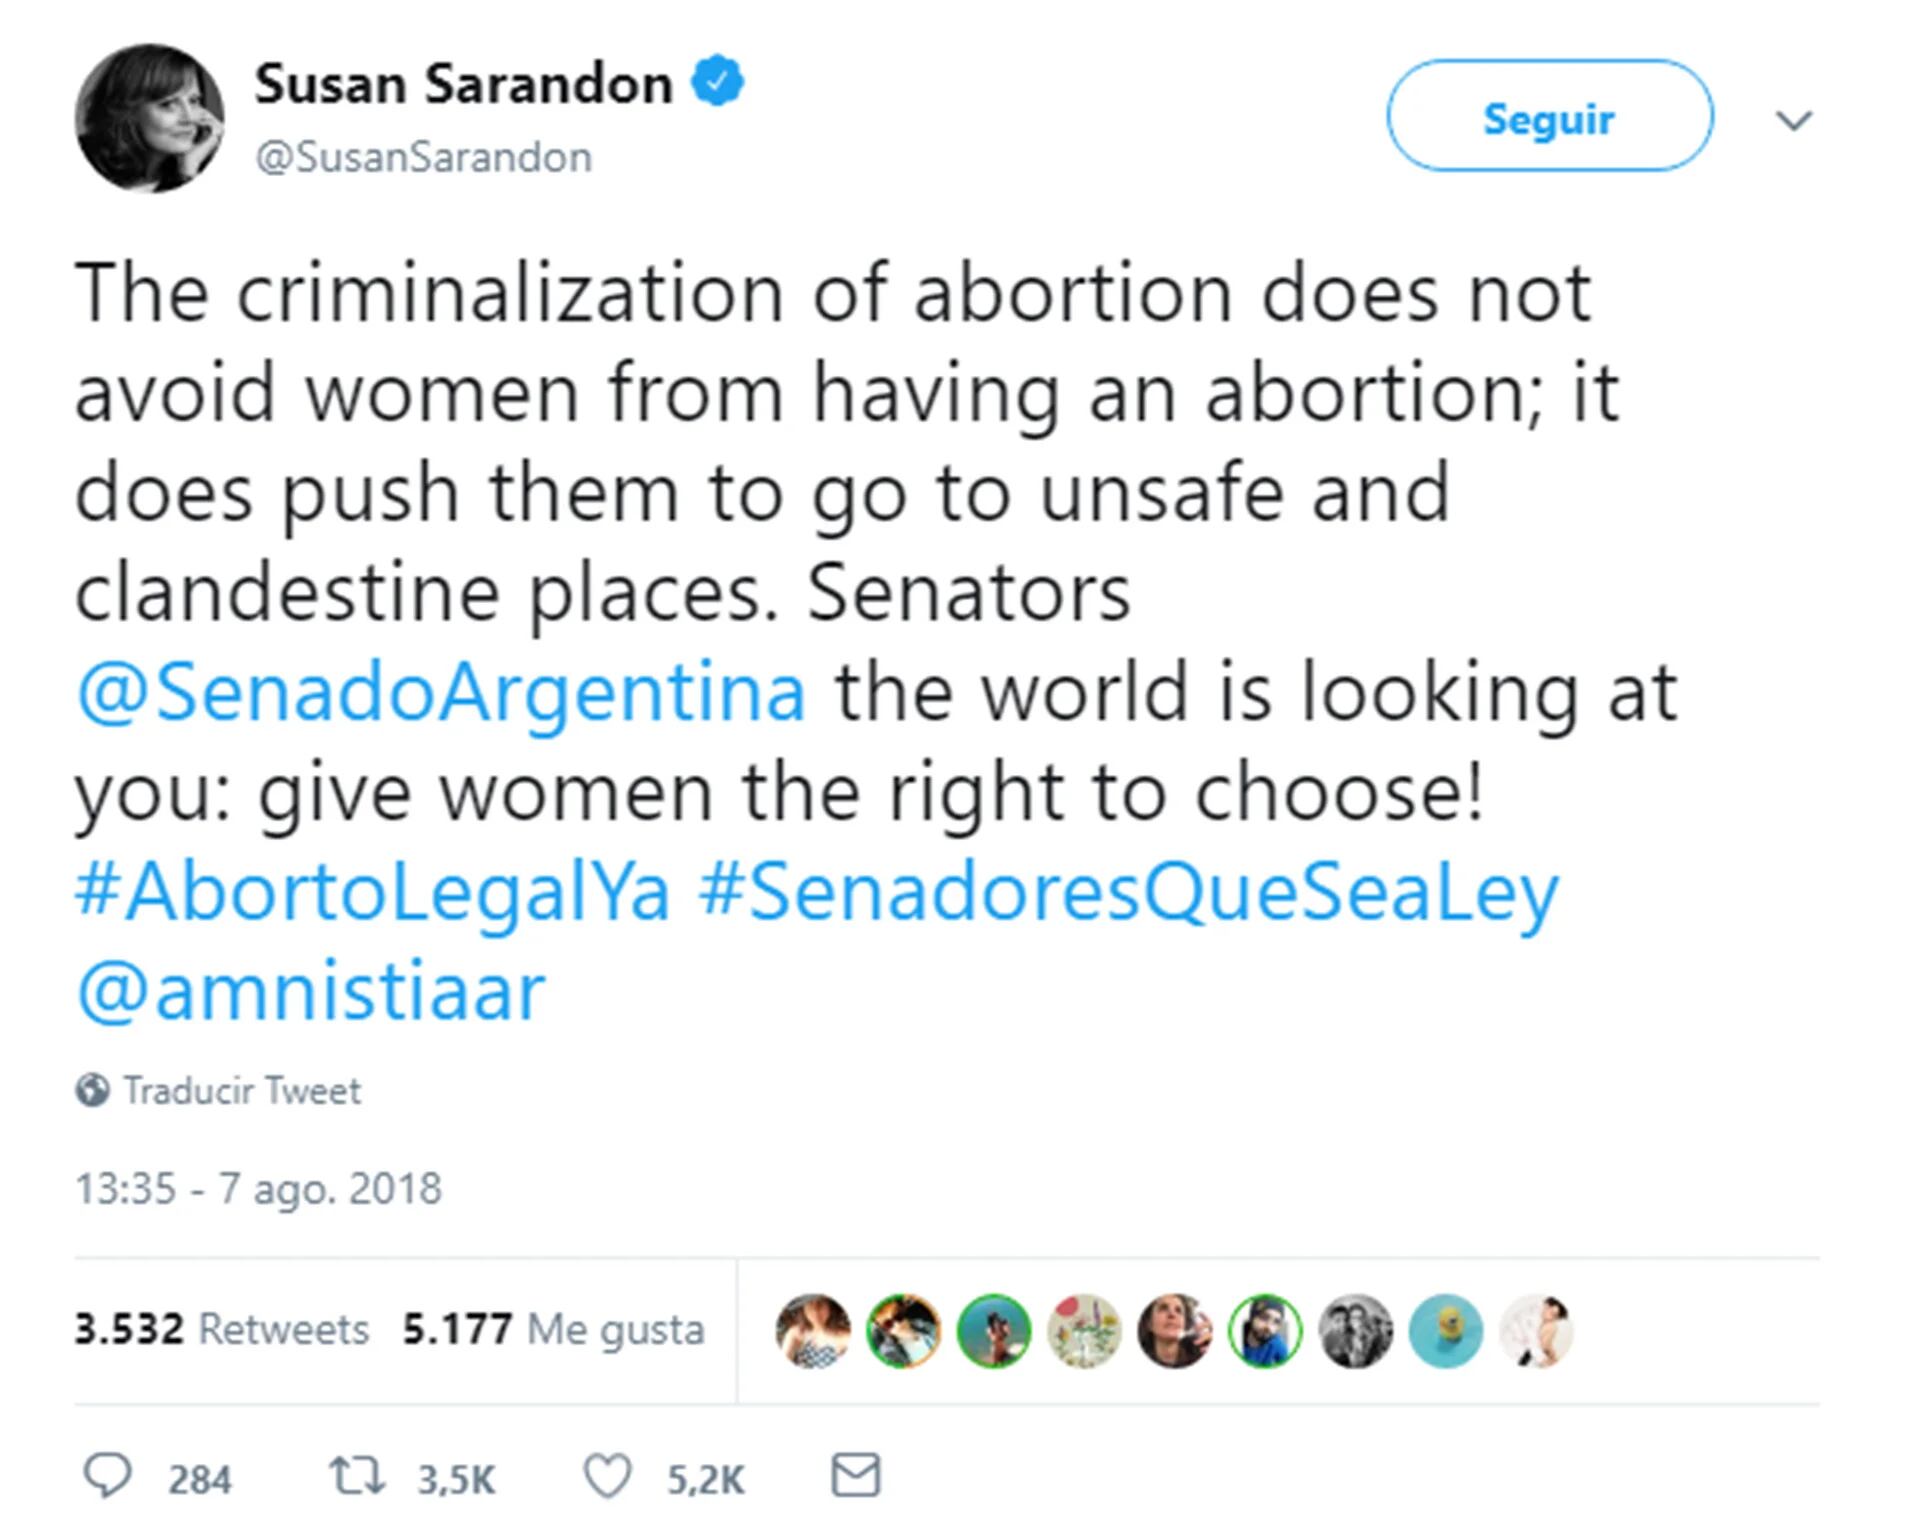 El mensaje de Susan Sarandon a favor de la legalización del aborto en la Argentina